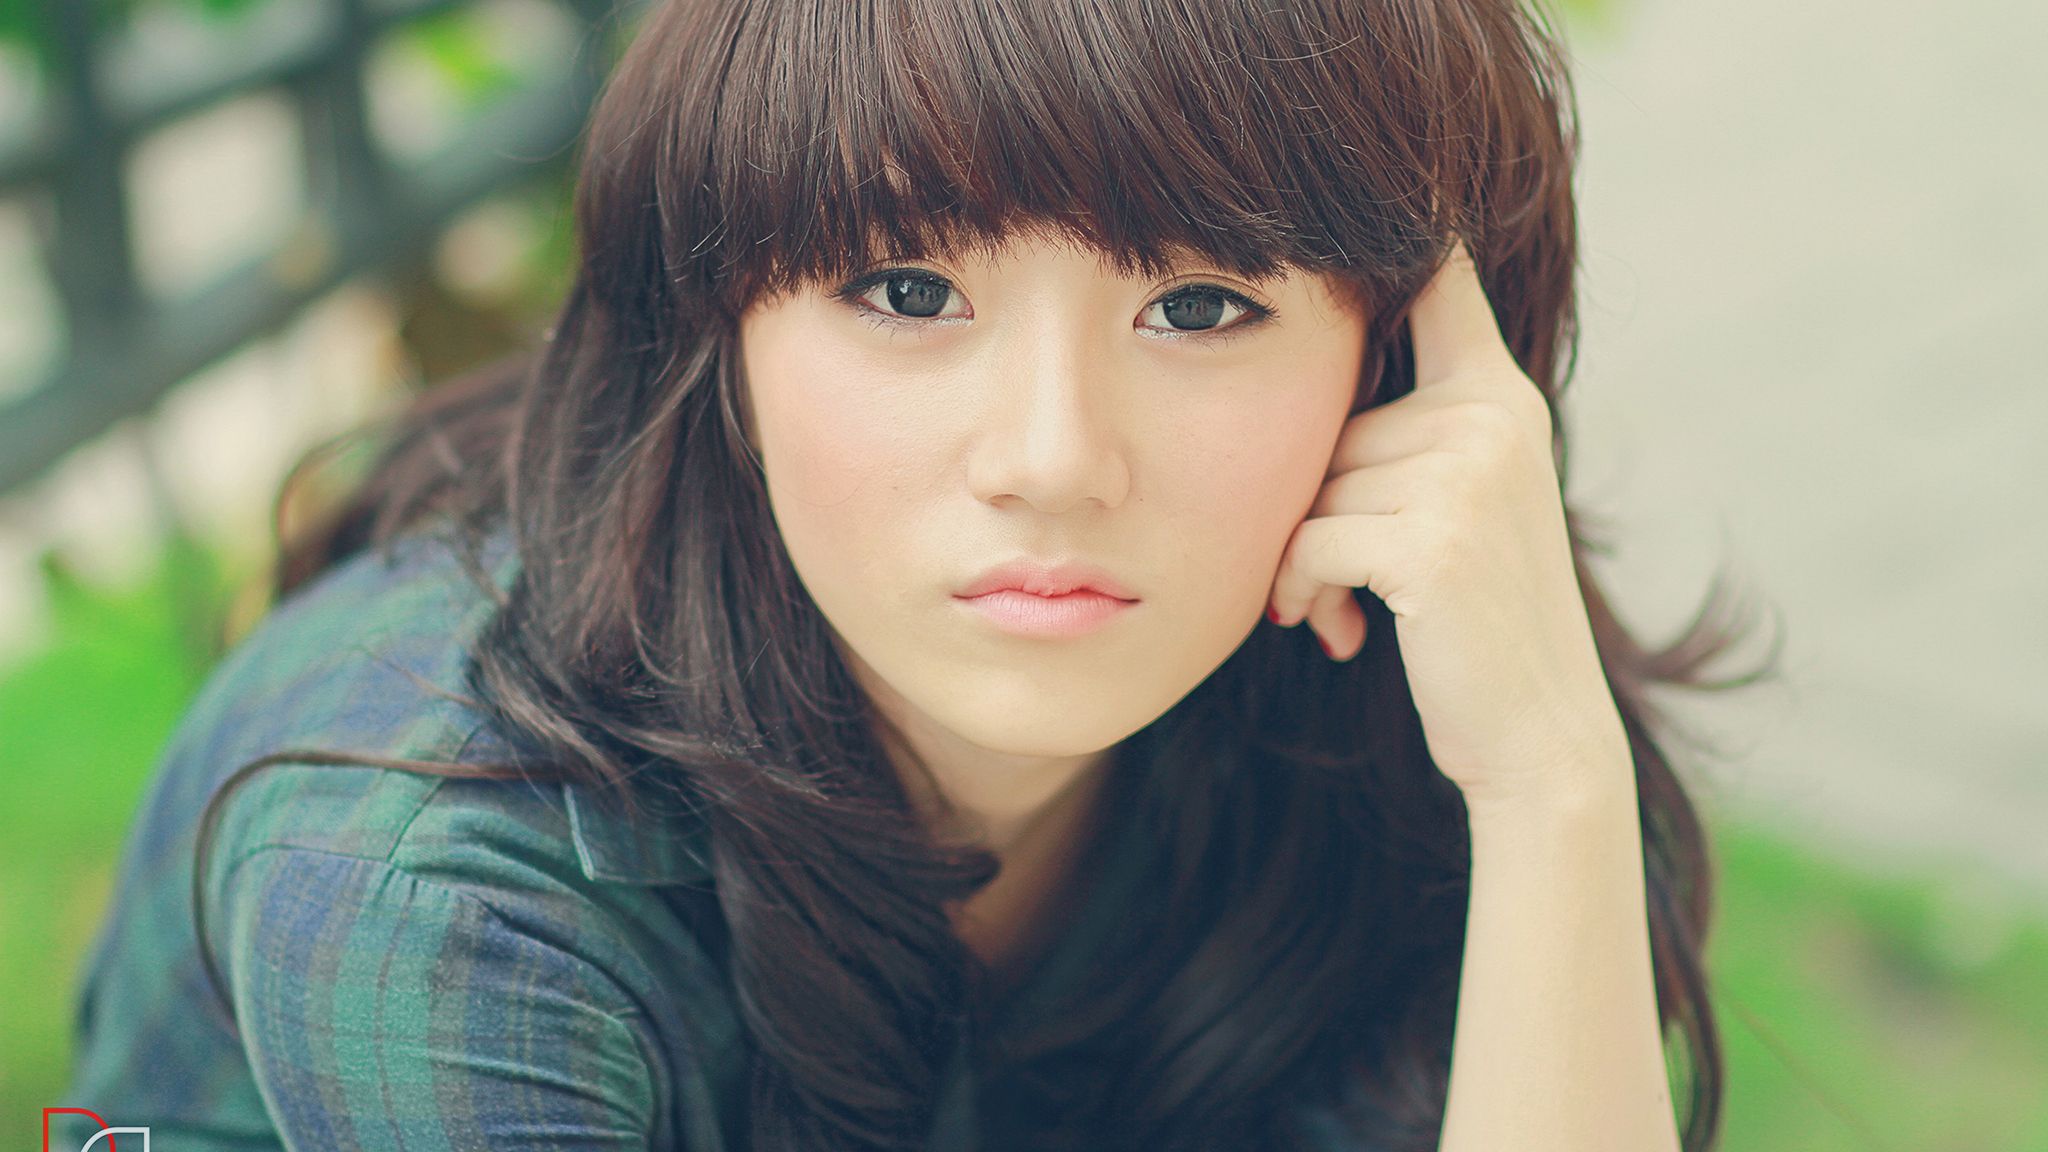 Cute Asian Girl Wallpaper Full HD Free Download